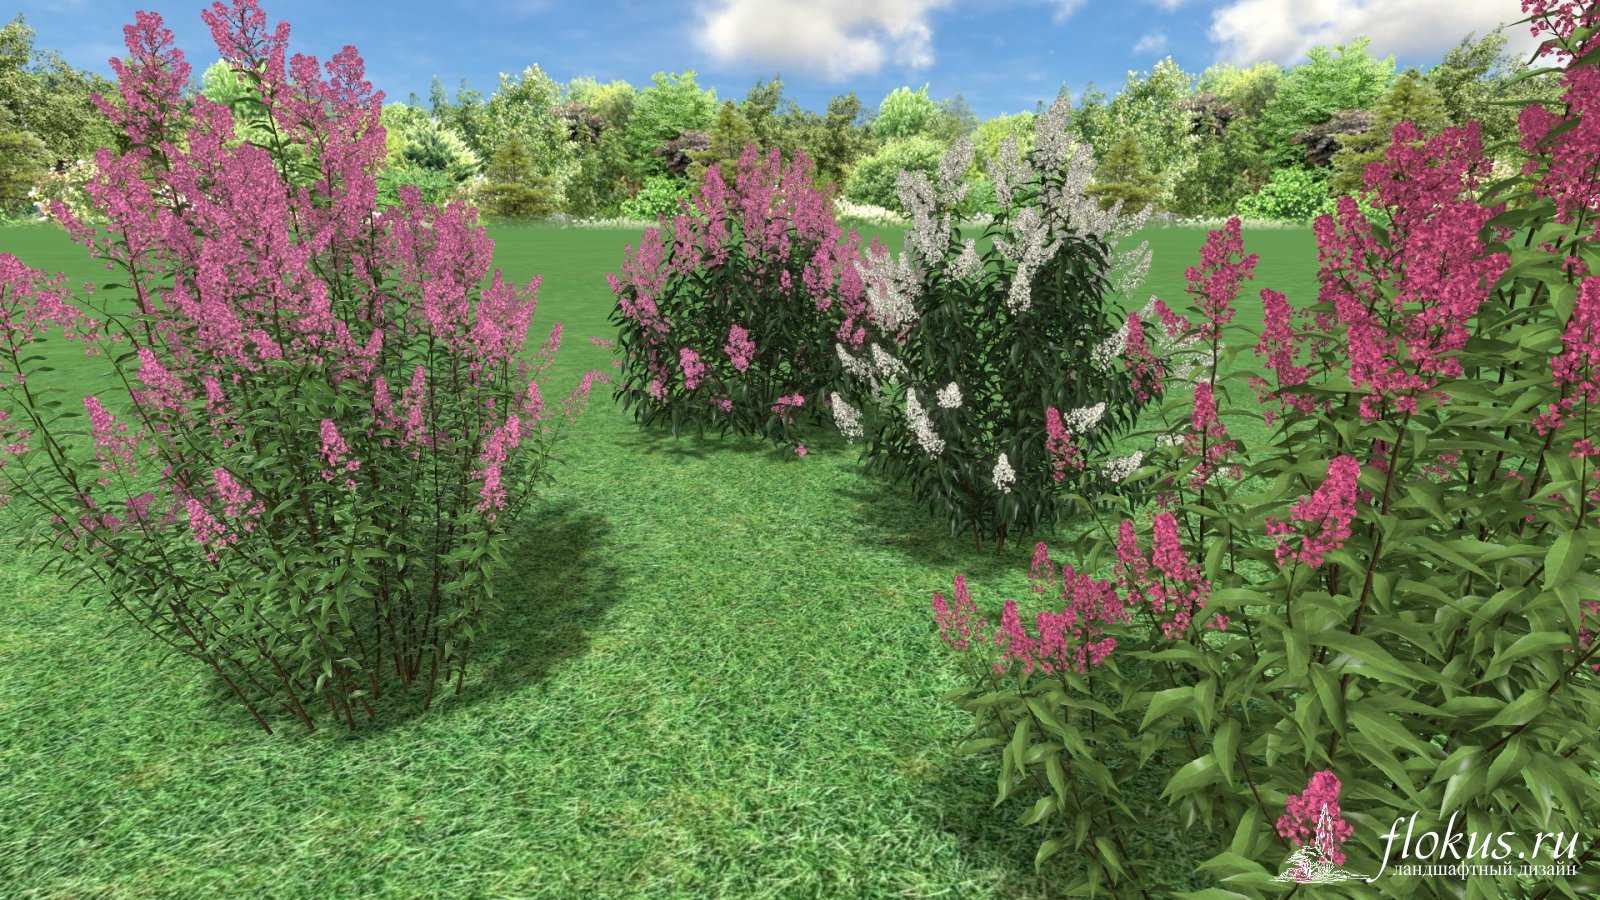 Спирея билларда: описание растения, посадка и уход, применение в ландшафтном дизайне, обрезка после цветения, как избавиться от растения в саду